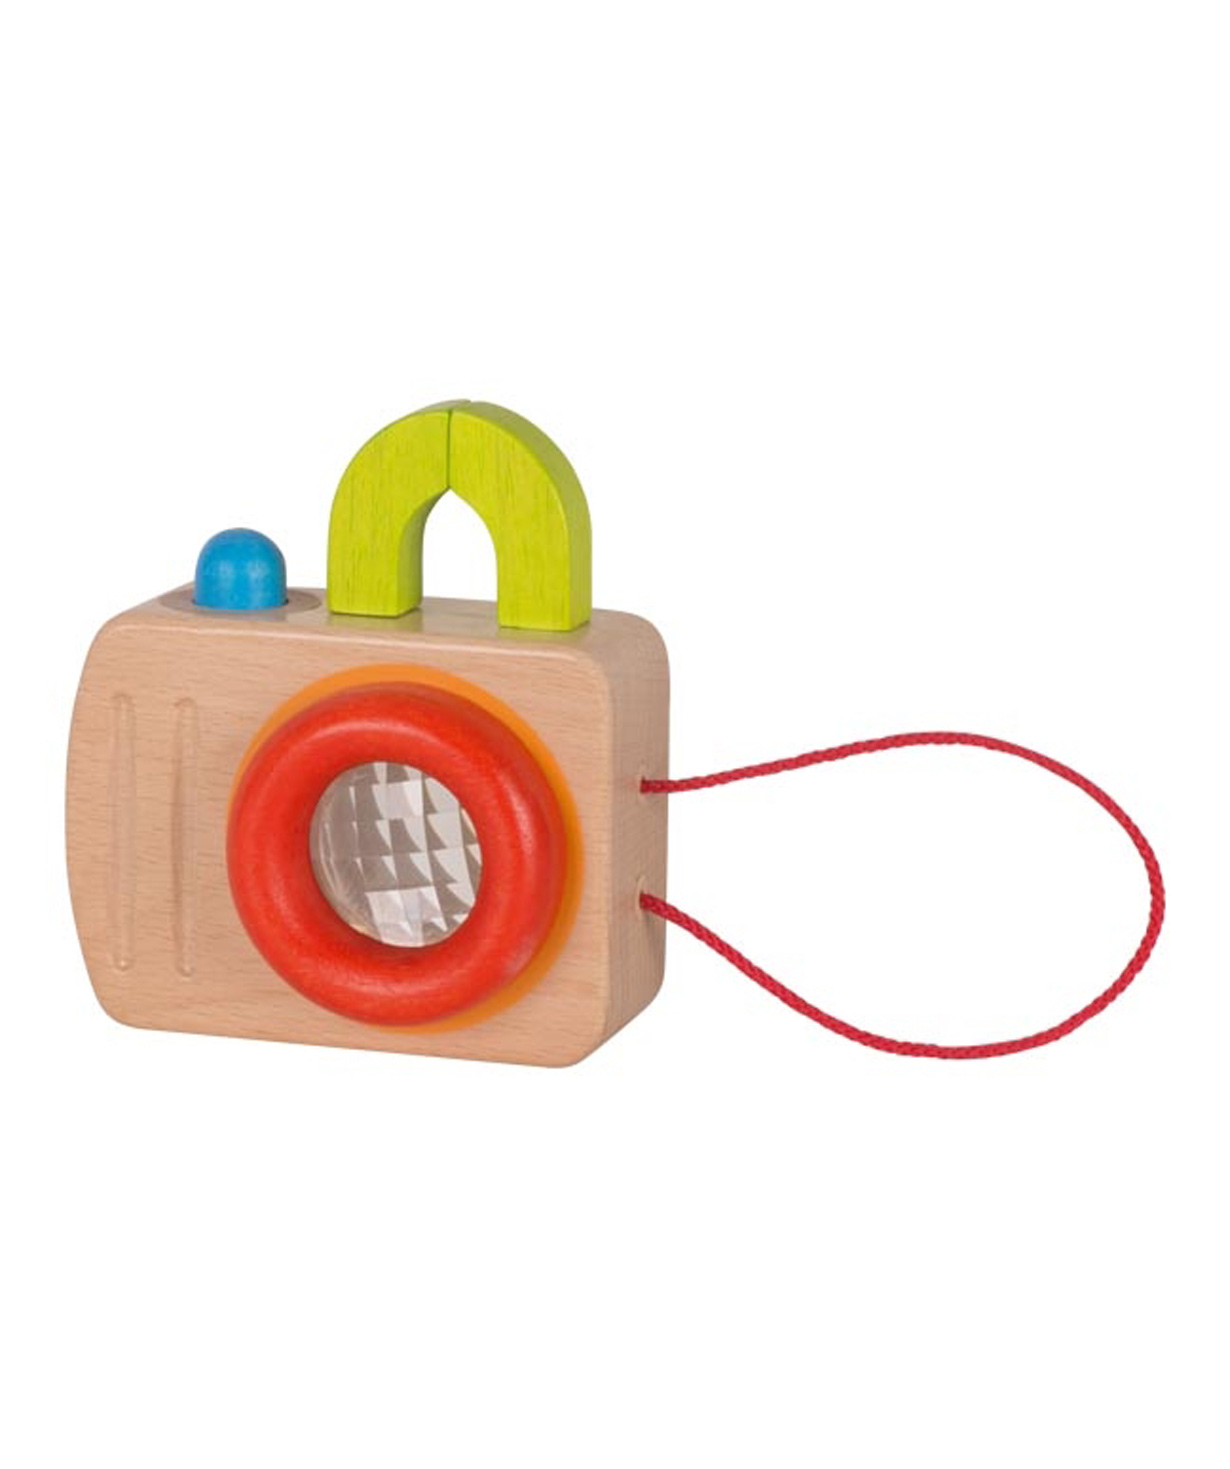 Toy `Goki Toys` camera